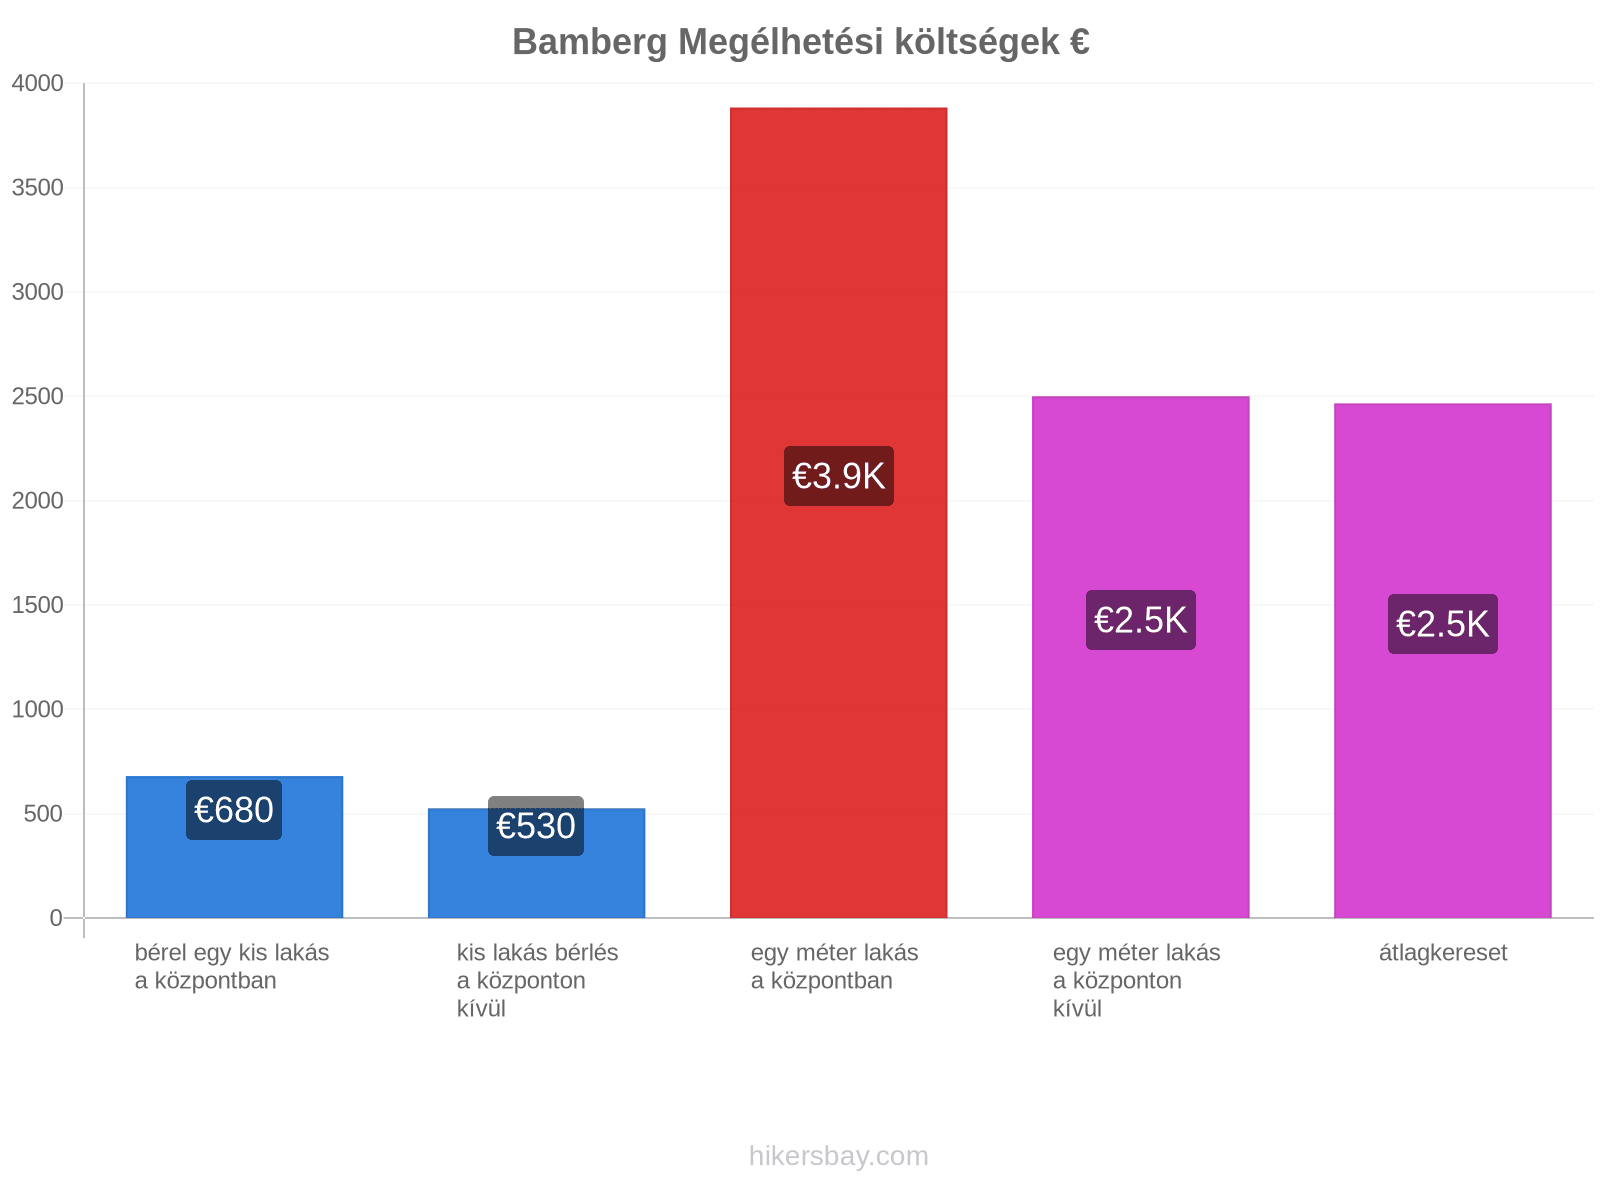 Bamberg megélhetési költségek hikersbay.com